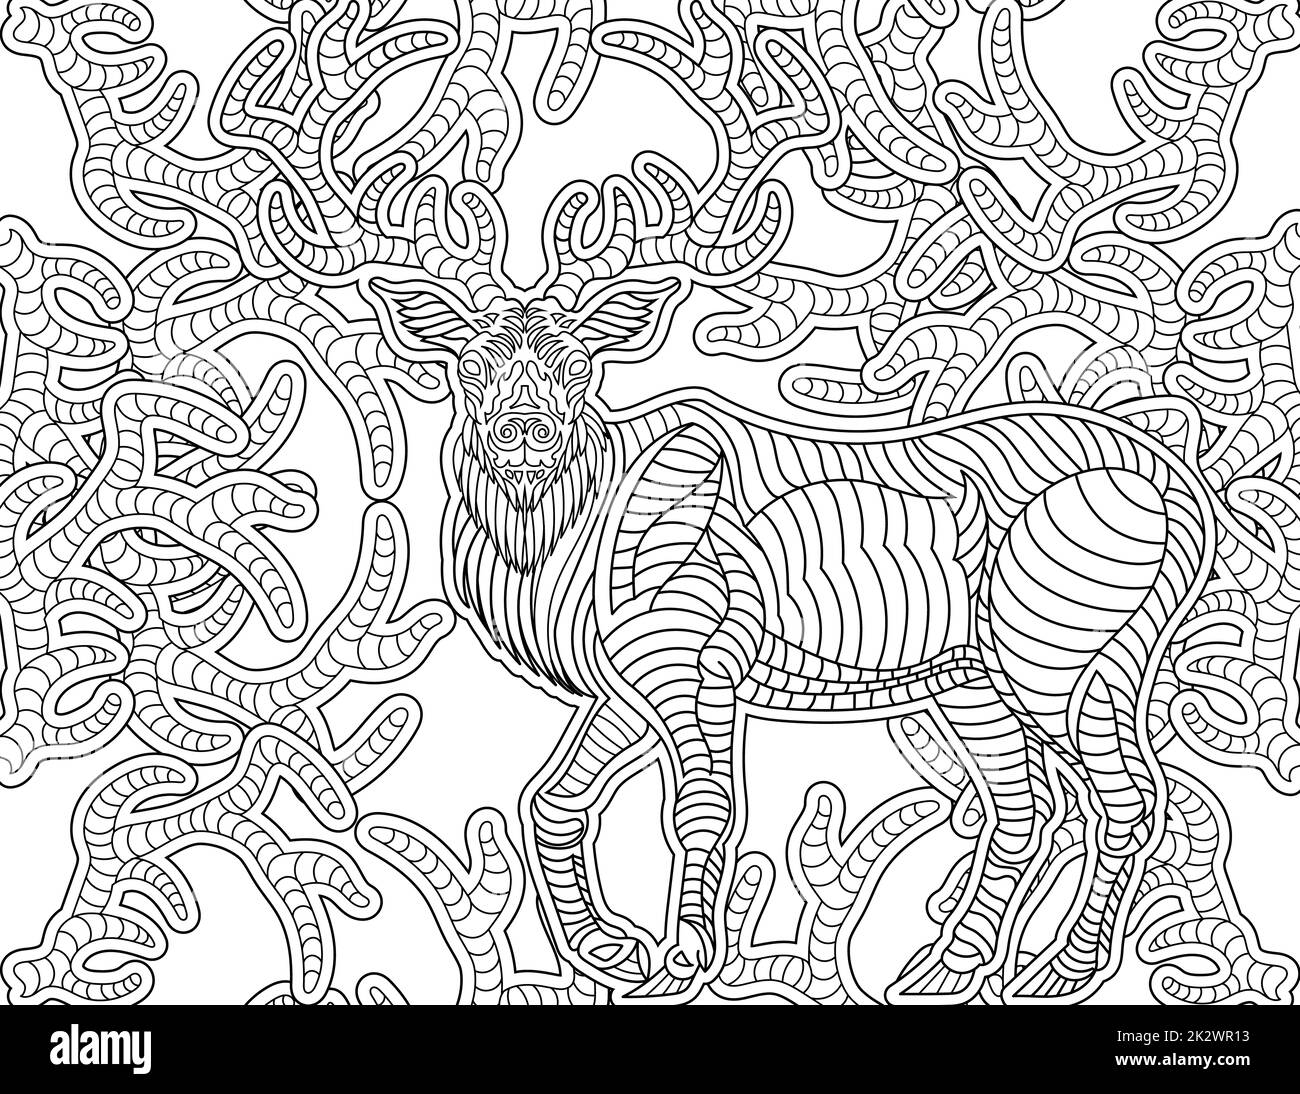 Hirsch Linie Zeichnung mit langen Hörnern wächst um ihn Malbuch Idee Stockfoto